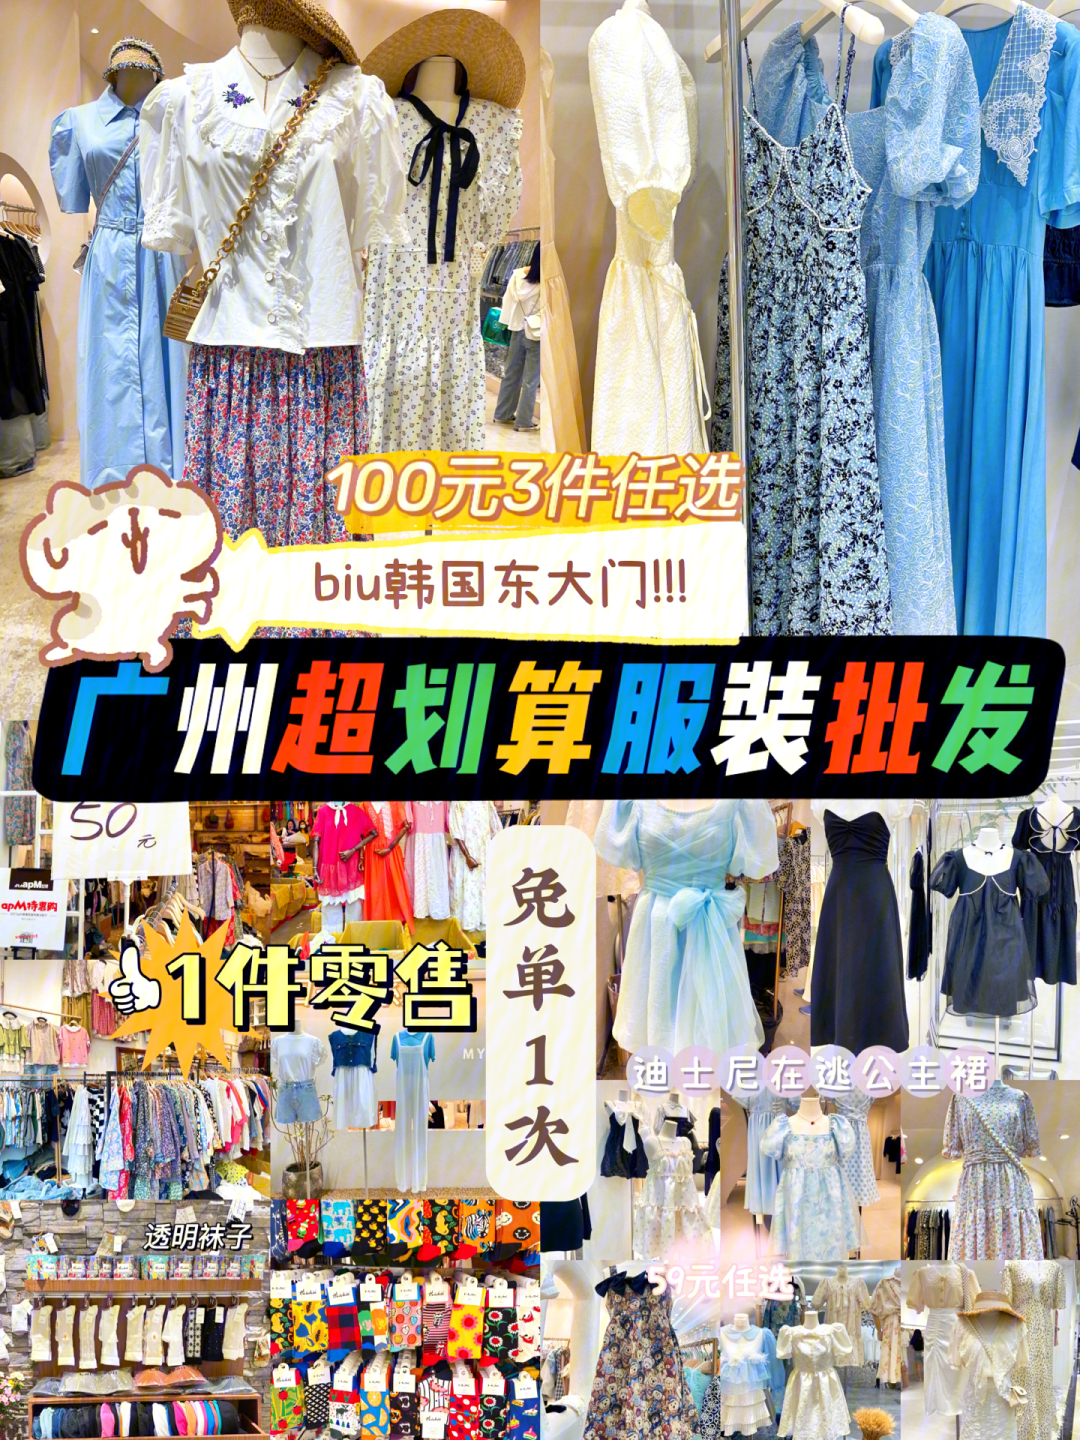 广州超划算服装批发市场东大门100元5件